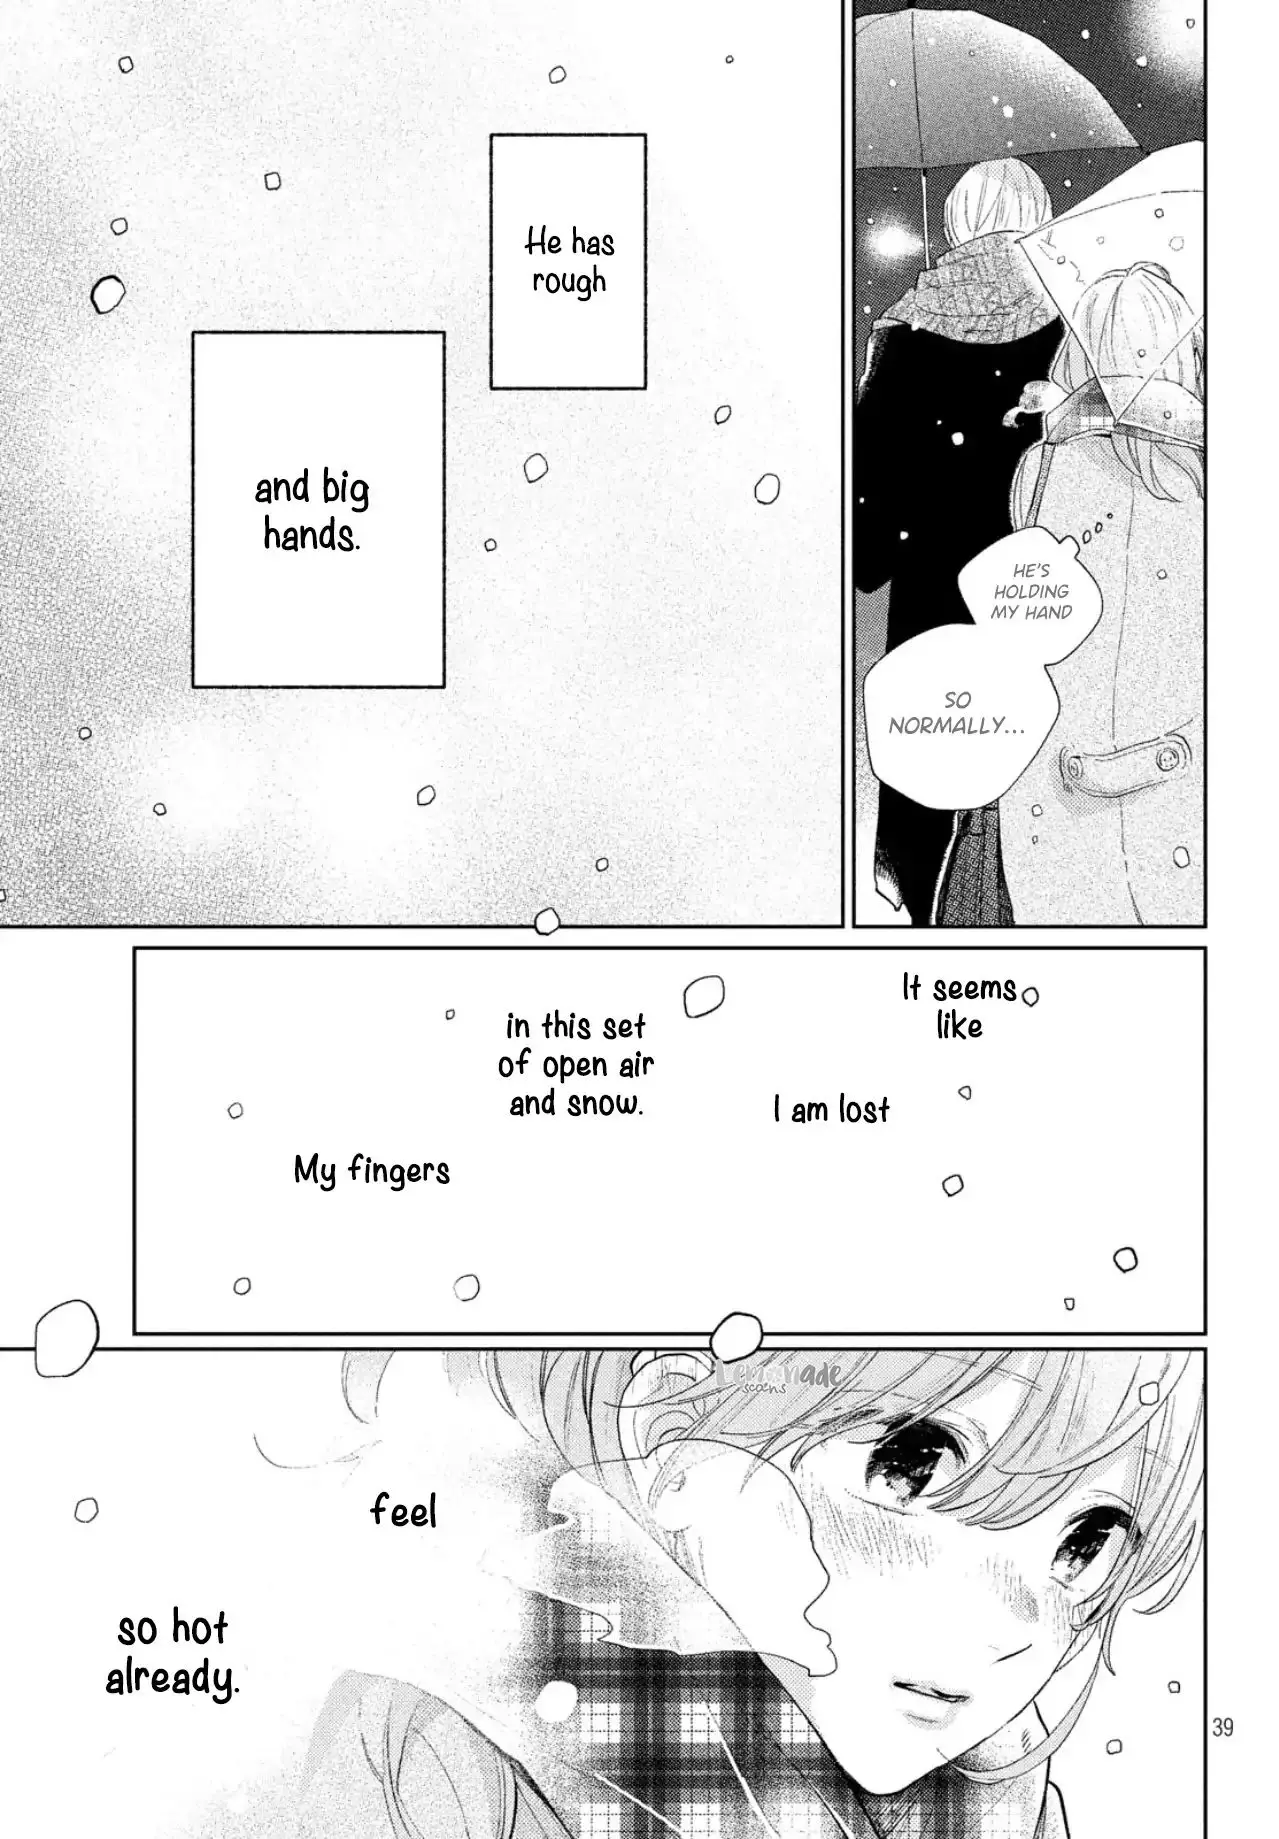 Yubisaki To Renren - 1 page 39-18a0ca95